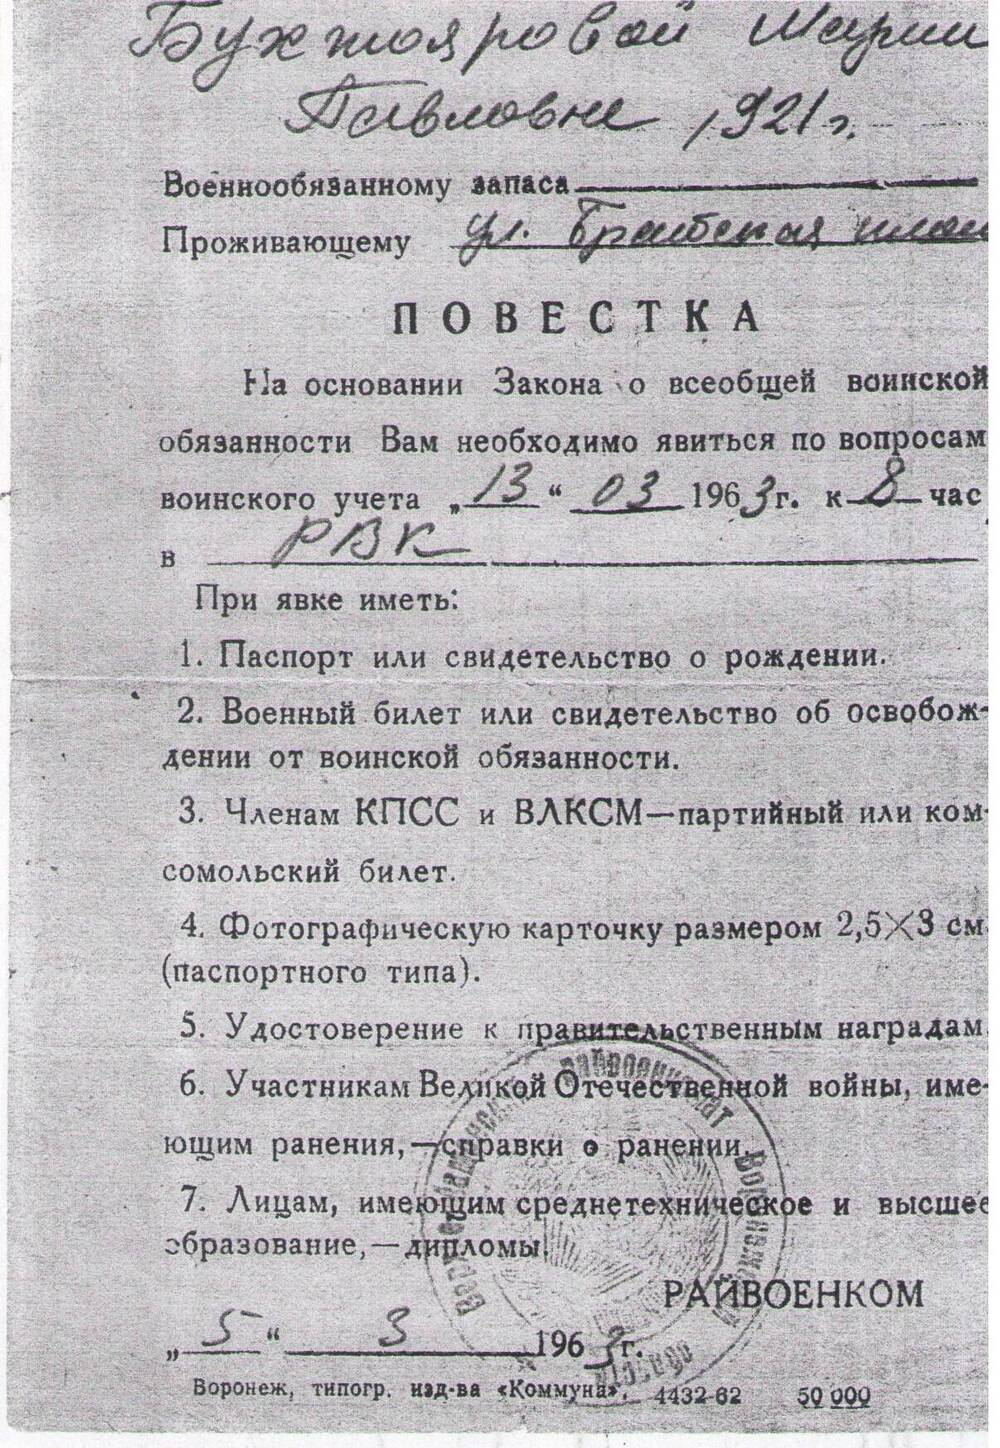 Повестка Бухтояровой М.П. в военкомат от 13.03.1963г.